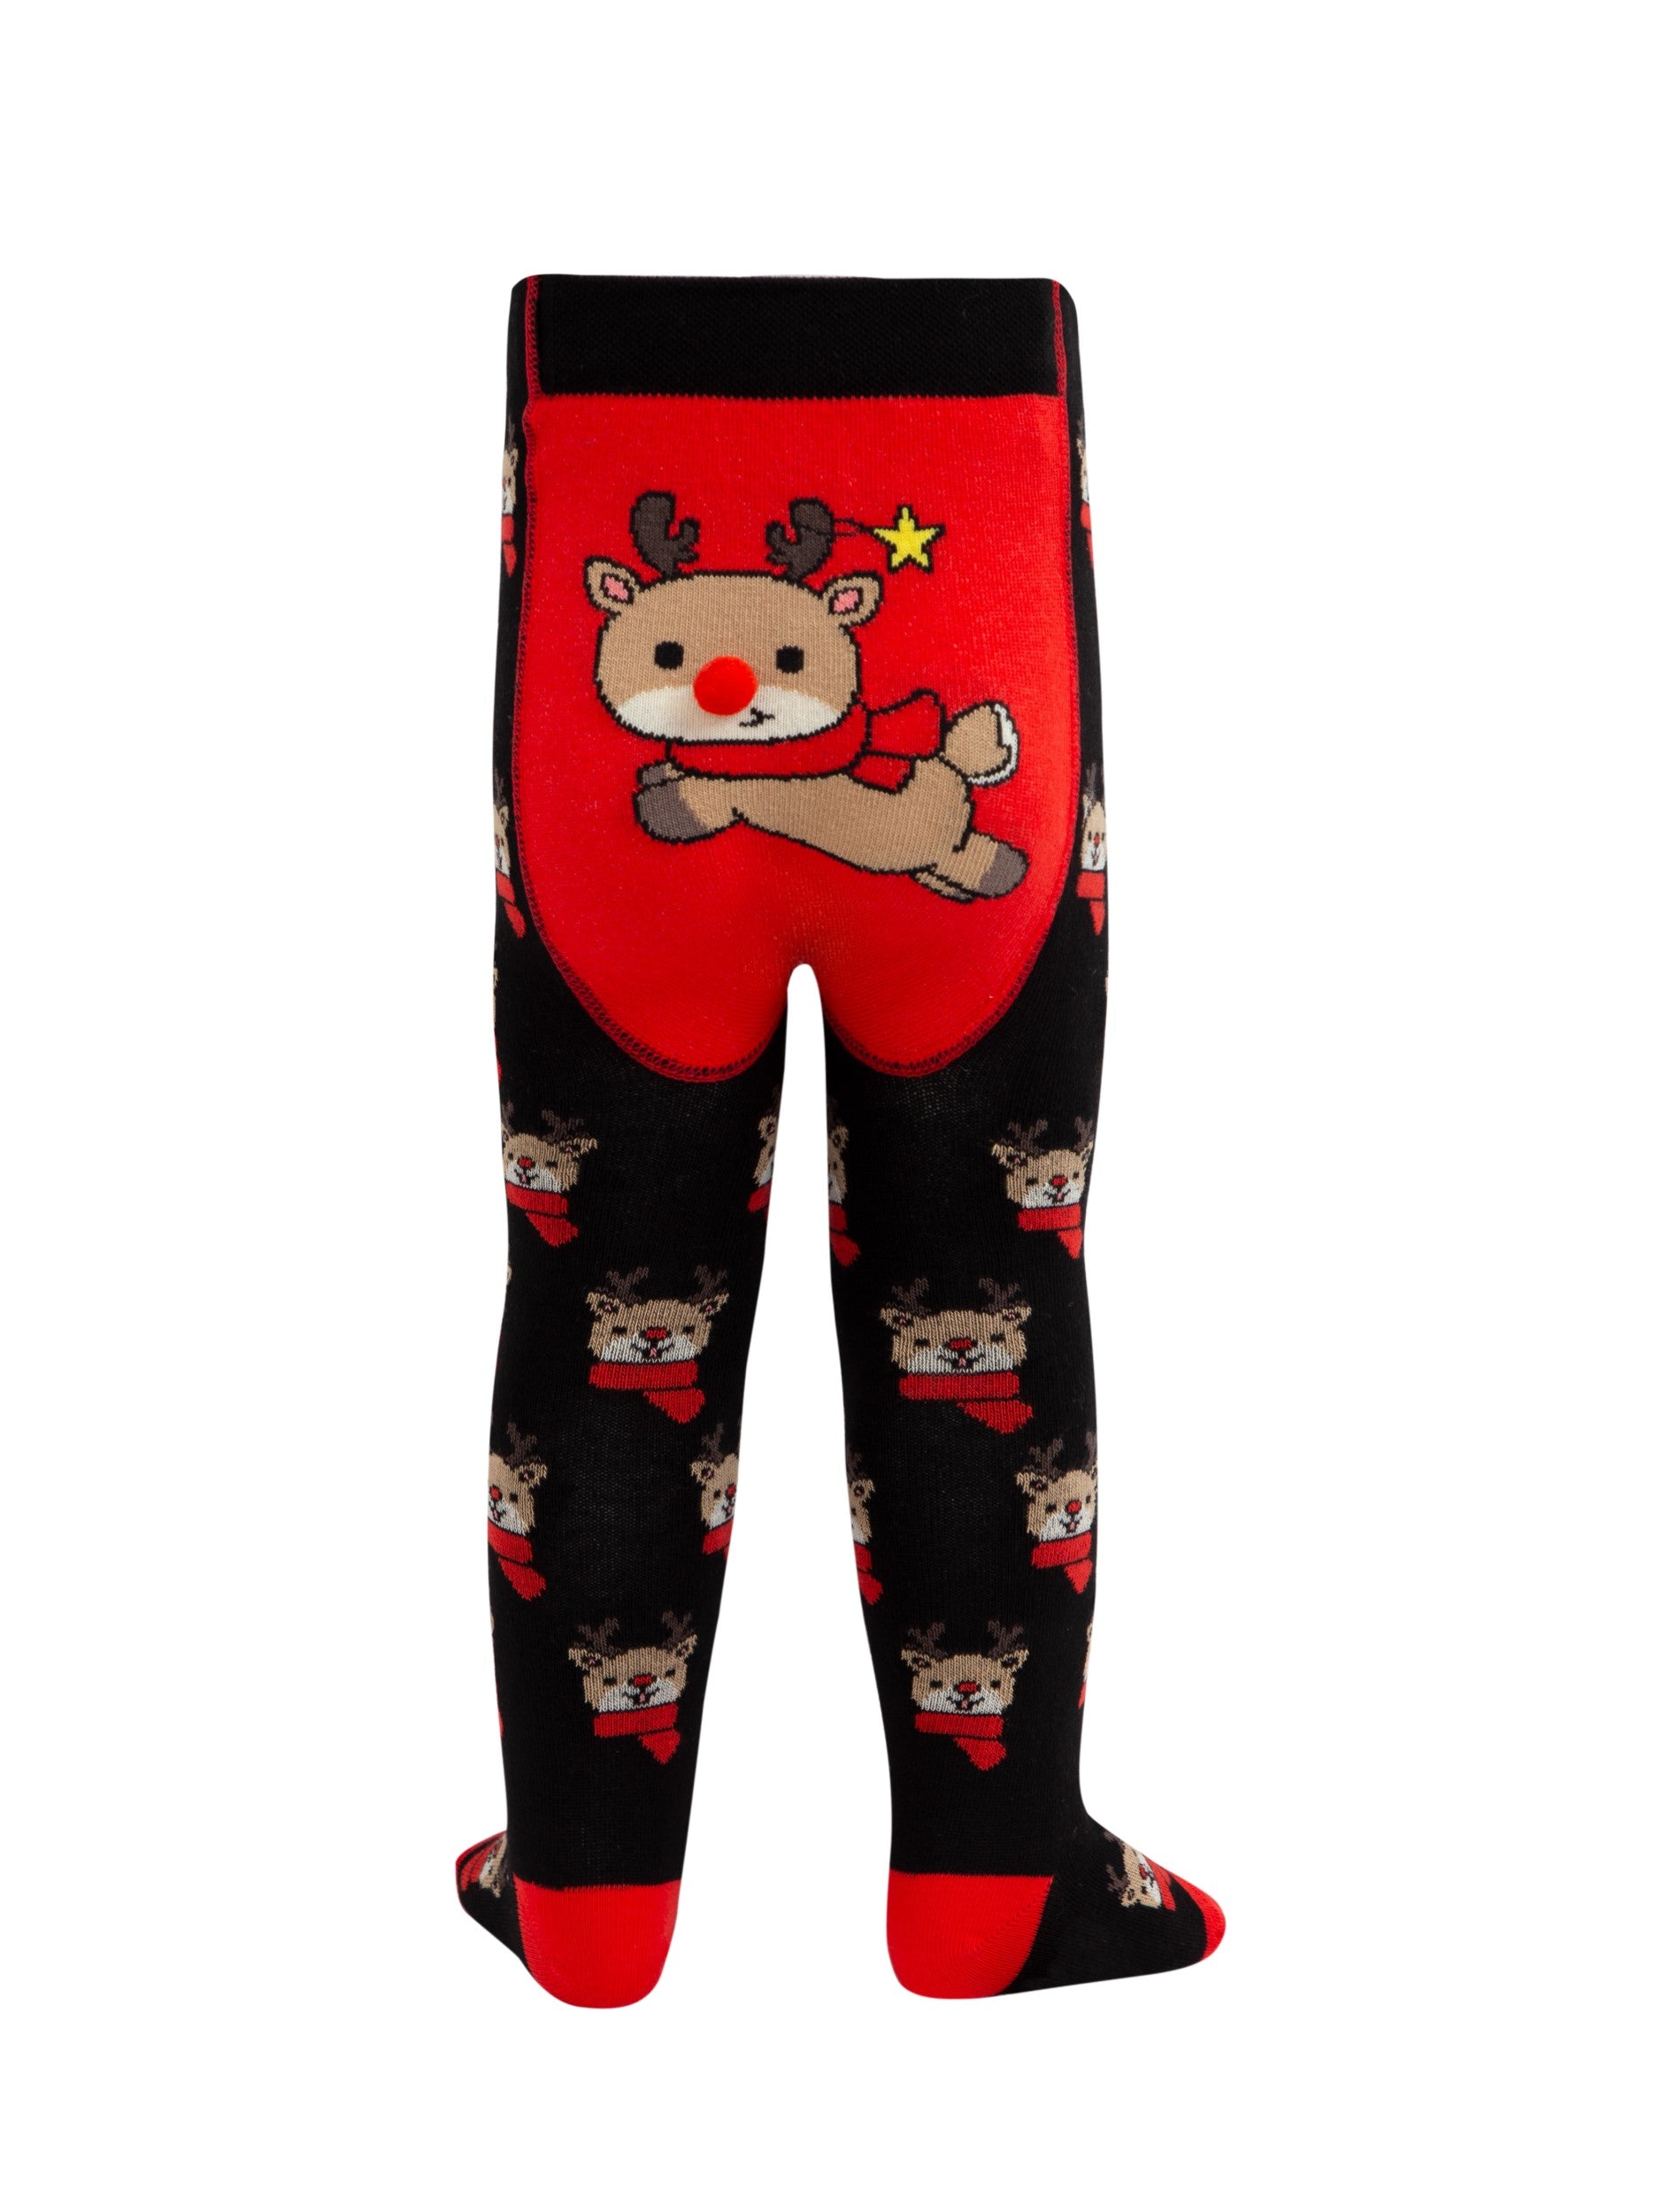 Otroške hlačne nogavice z božičnim vzorcem Praznični Jelenčki